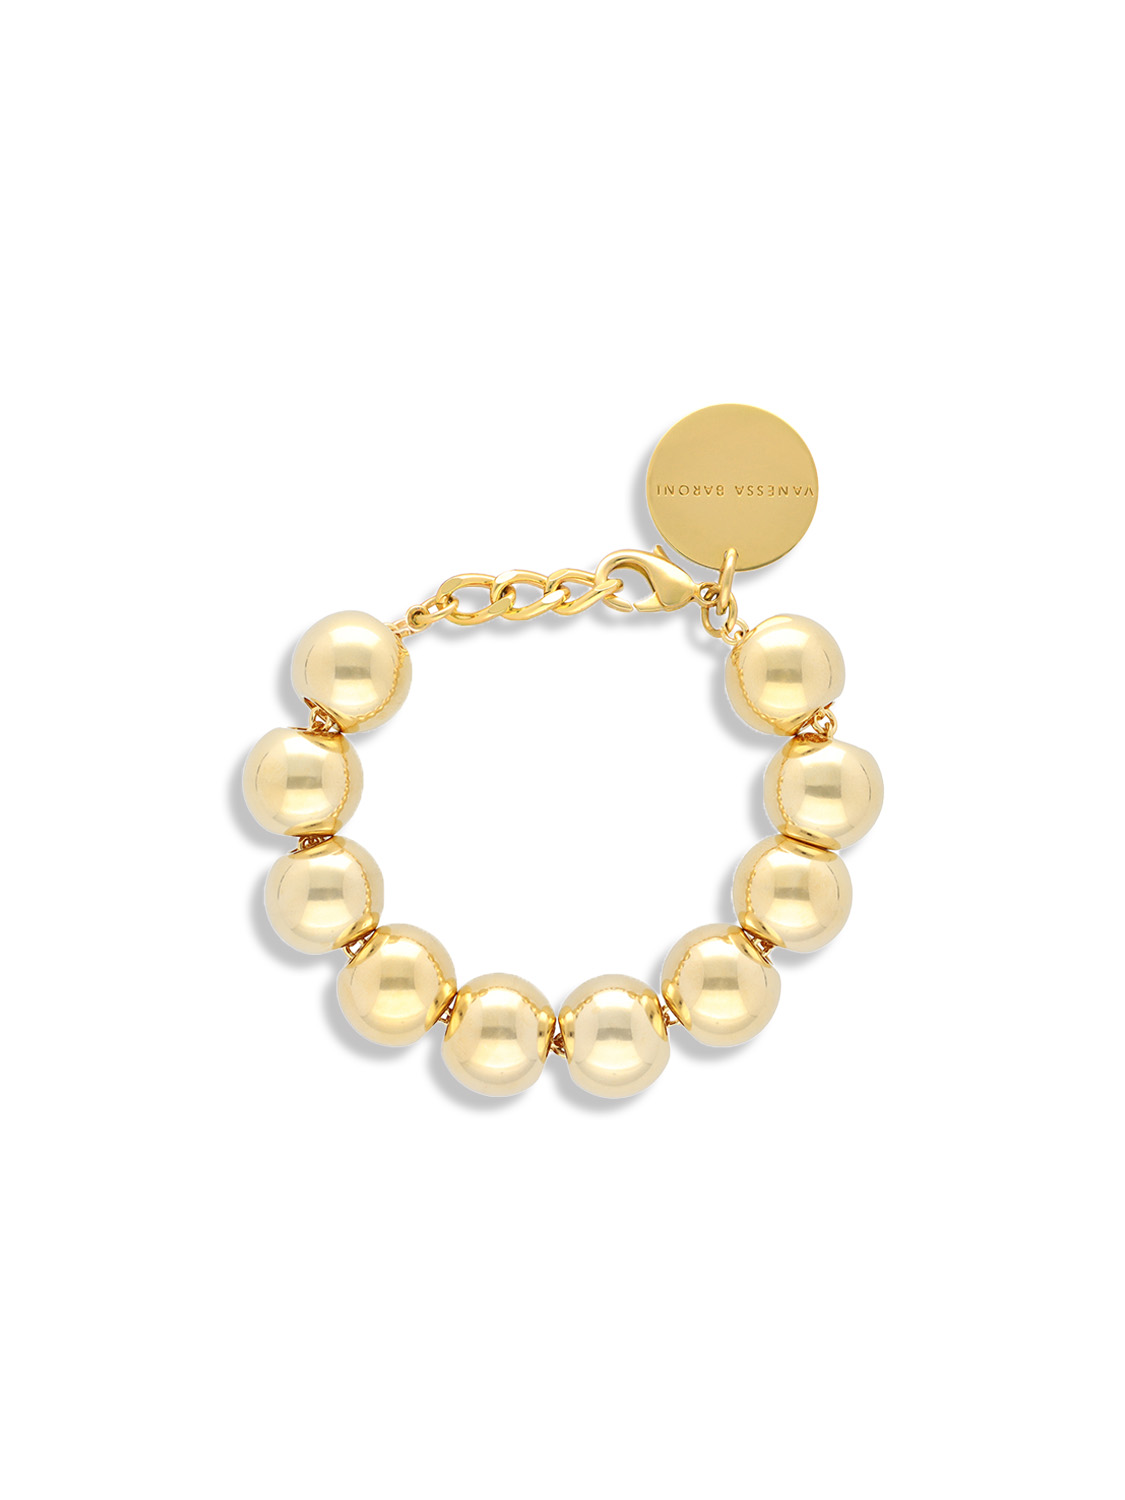 Beads Bracelet - Bracelet in ball design